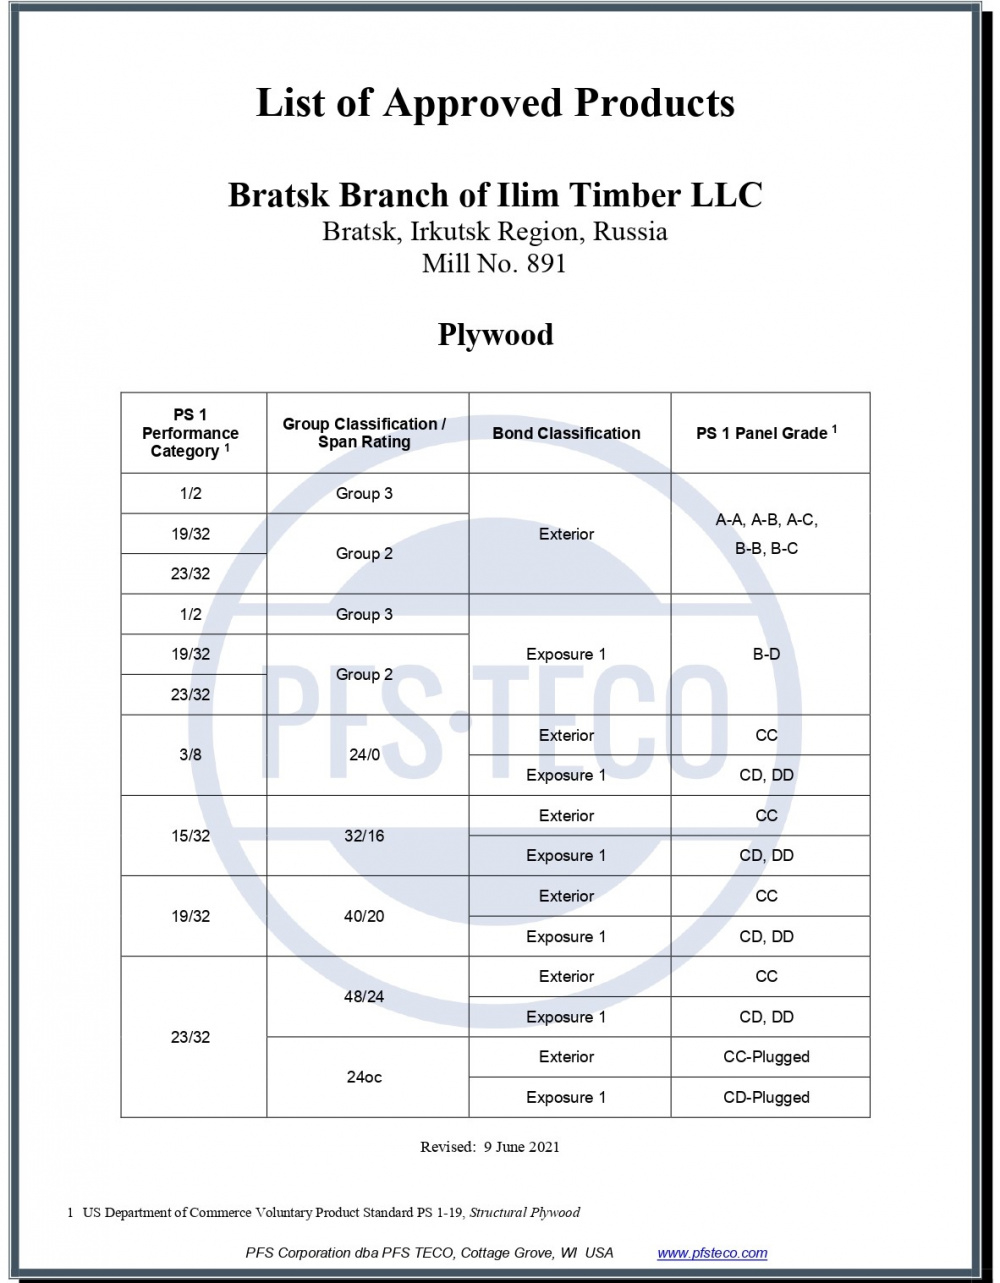 Илим Тимбер расширяет продуктовую линейку фанеры для рынка США